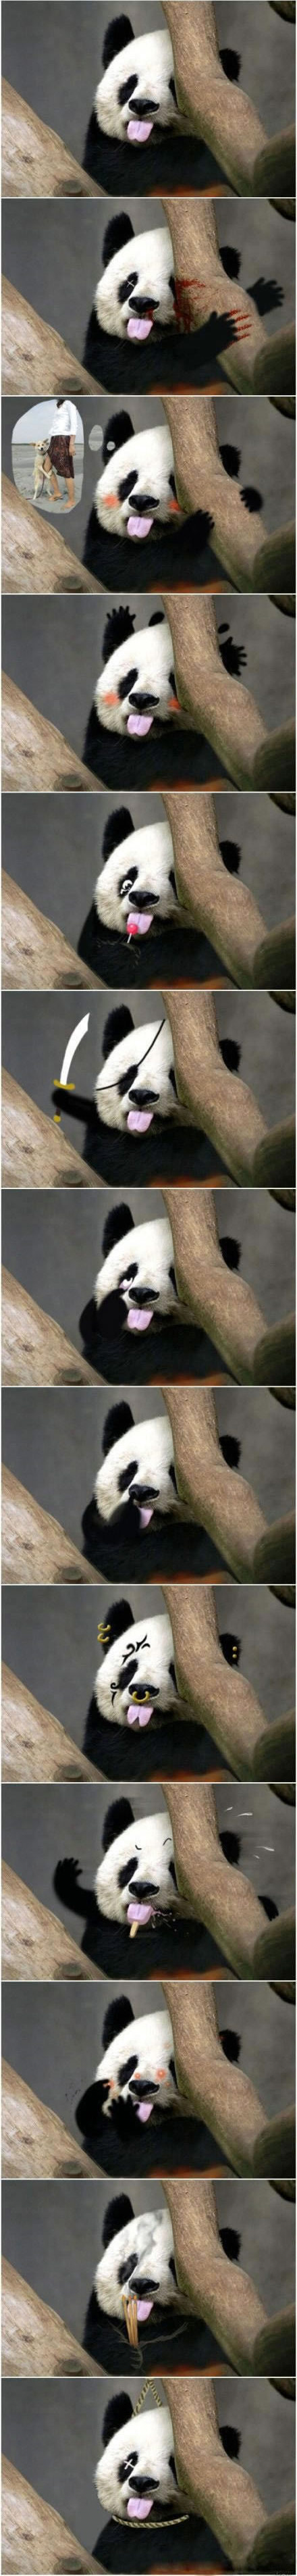 【拍砖】搞笑动物之恶搞大熊猫图片,真是犀利到家了。